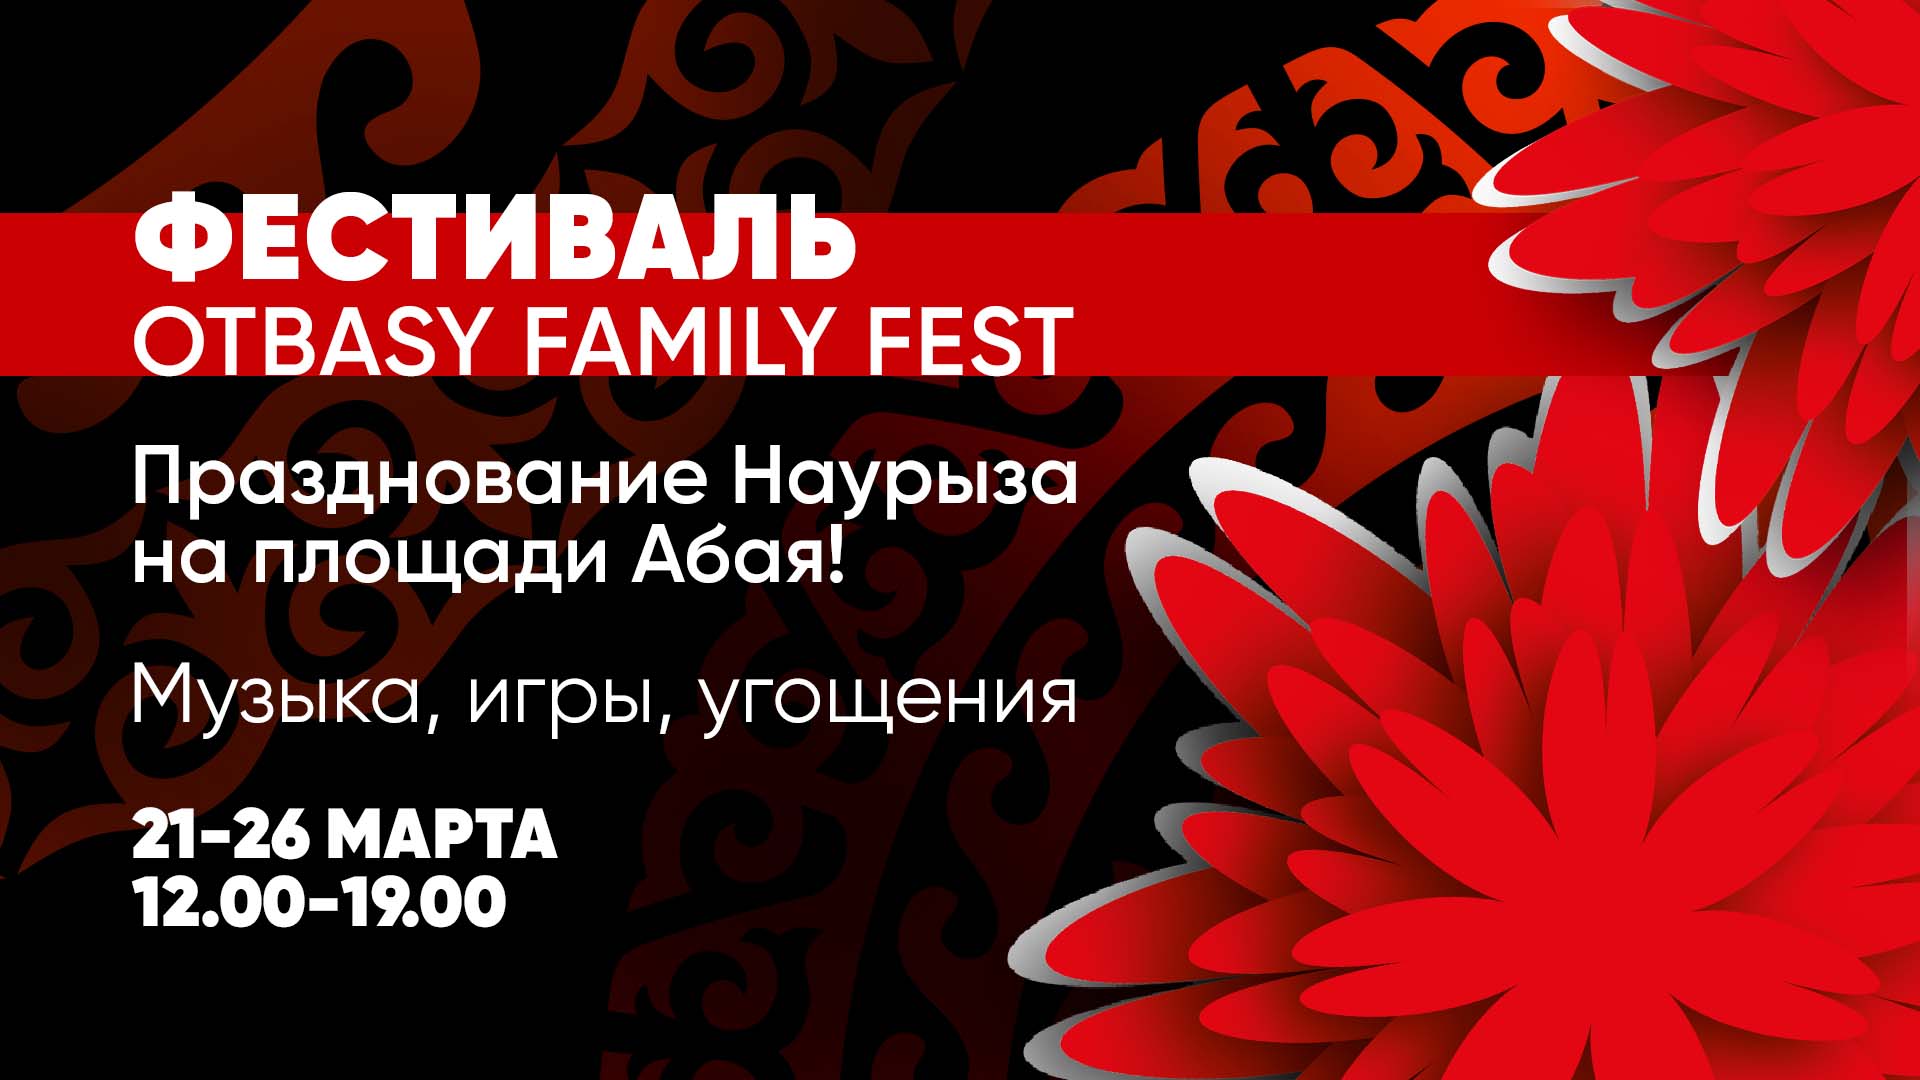 Фестиваль Otbasy Family Fest станет одной из главных площадок для празднования Наурыза в Алматы